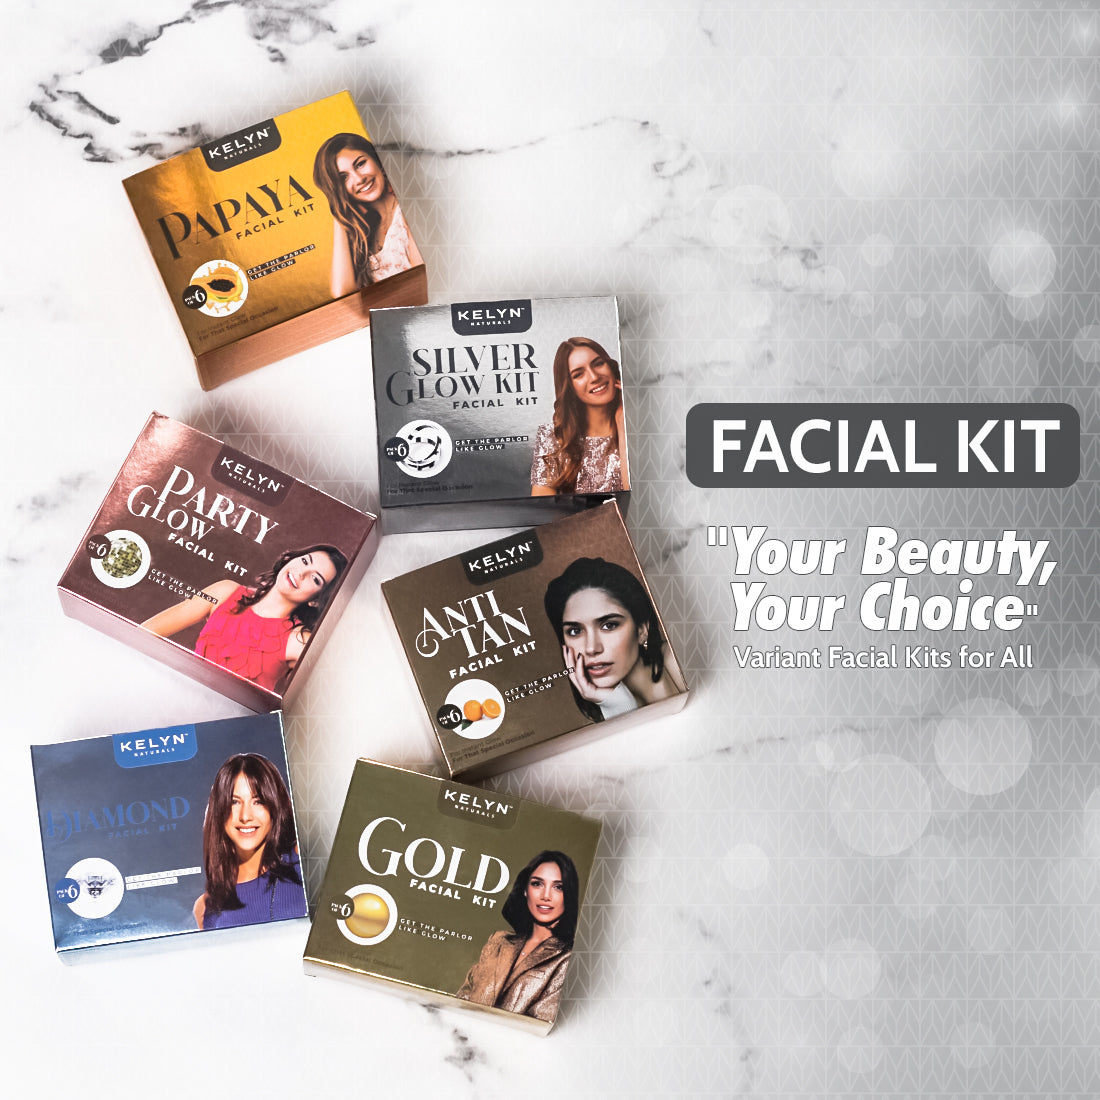 Kelyn Silver Glow Facial Kit (Pack of 6) - 60g